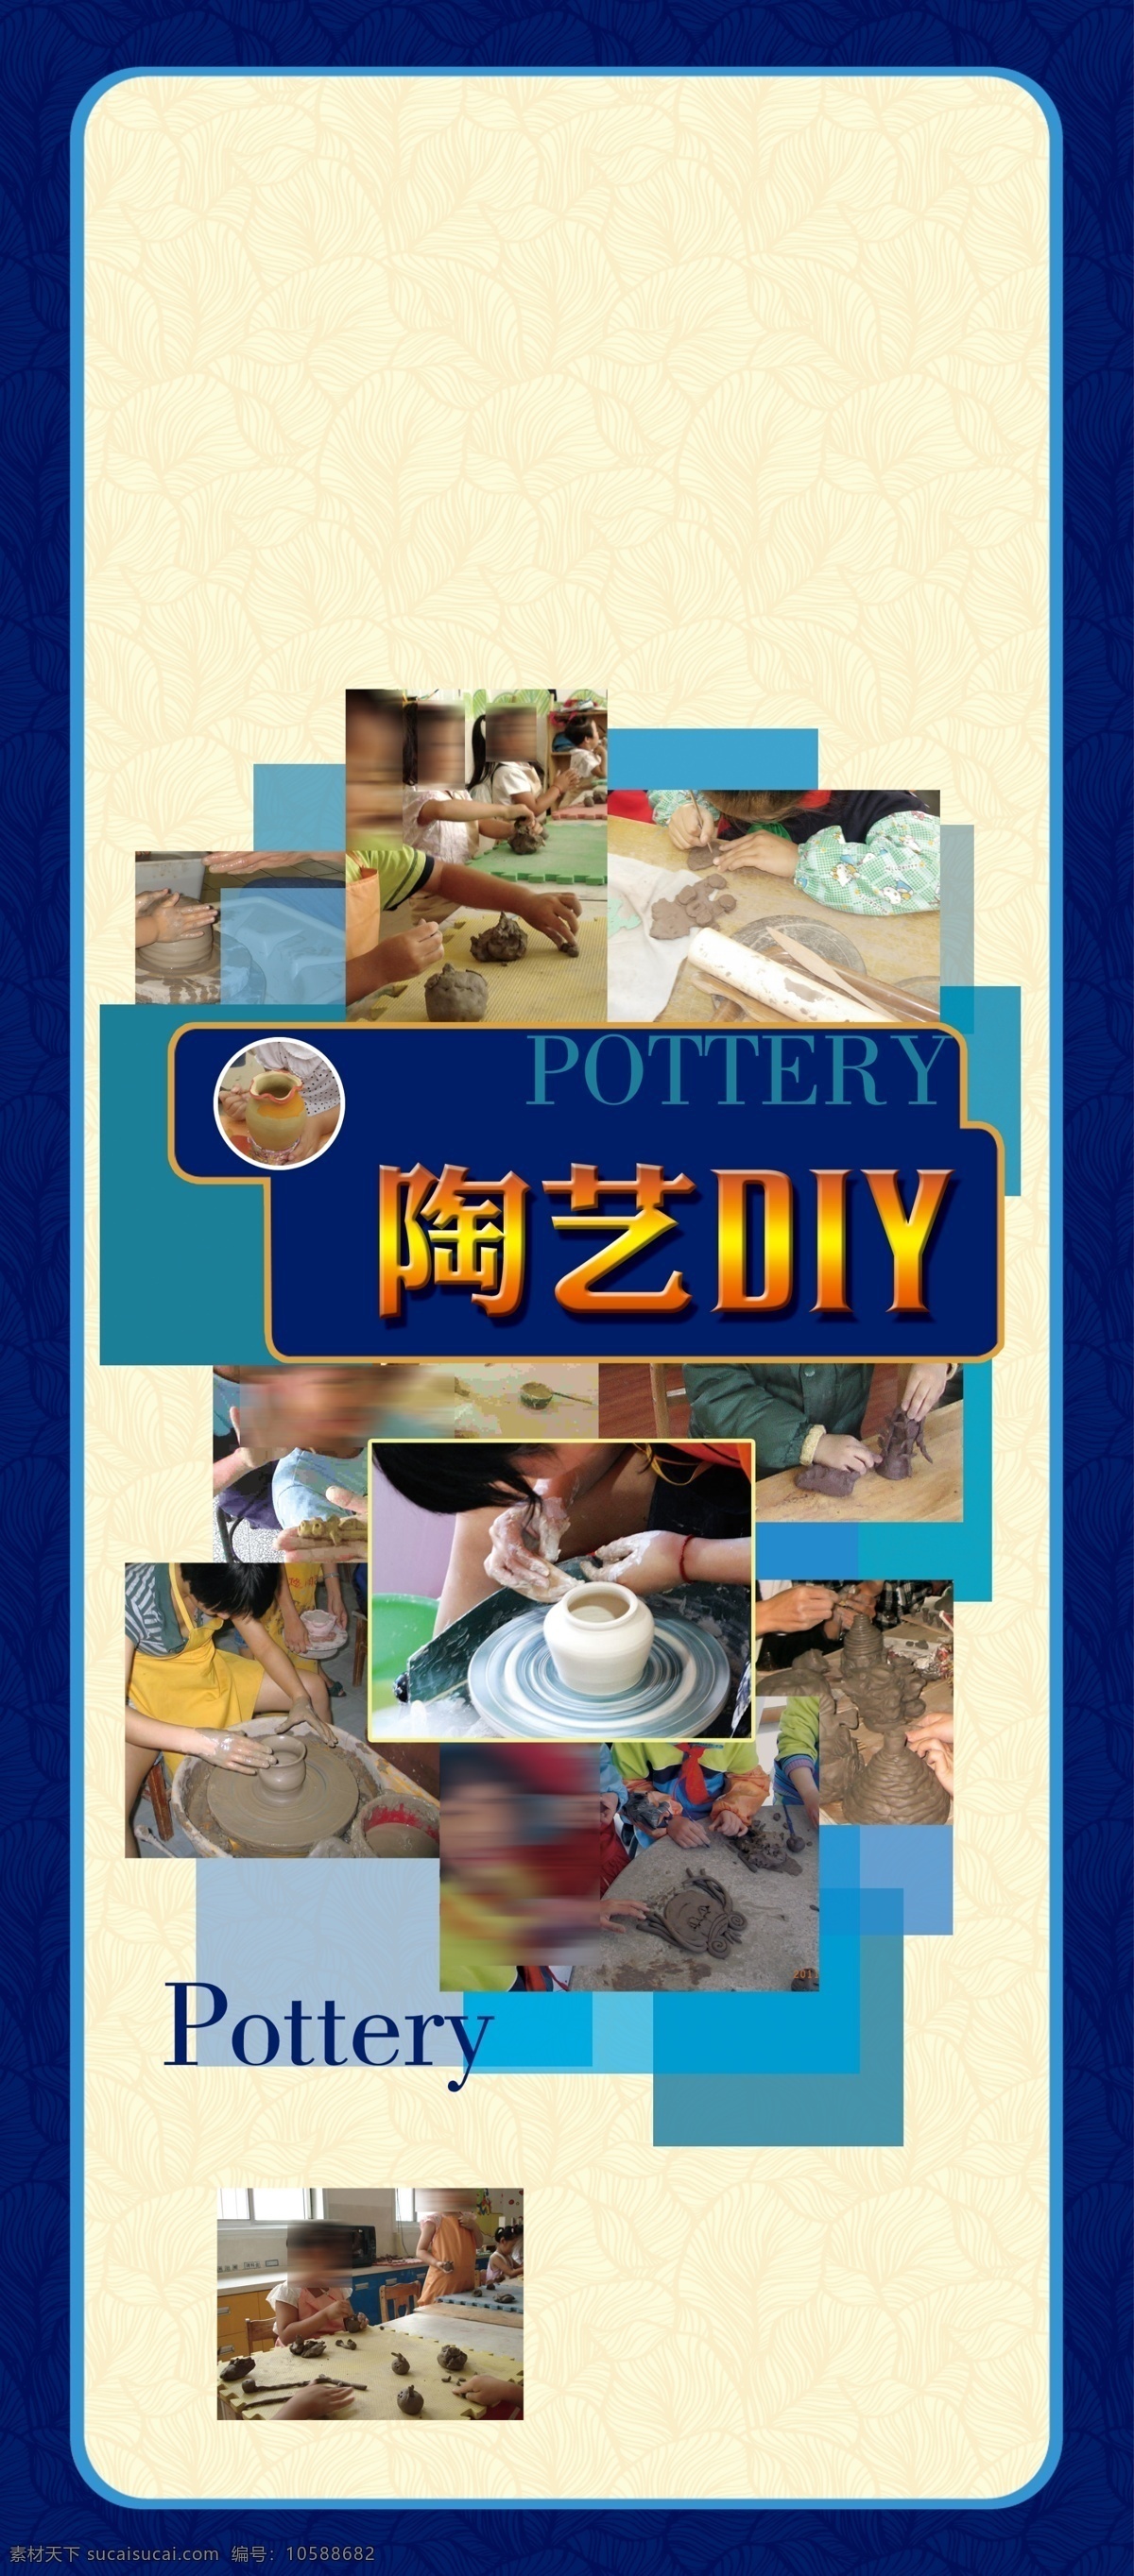 陶艺 diy 陶艺艺术 手工陶瓷艺术 陶艺diy 广告设计模板 源文件